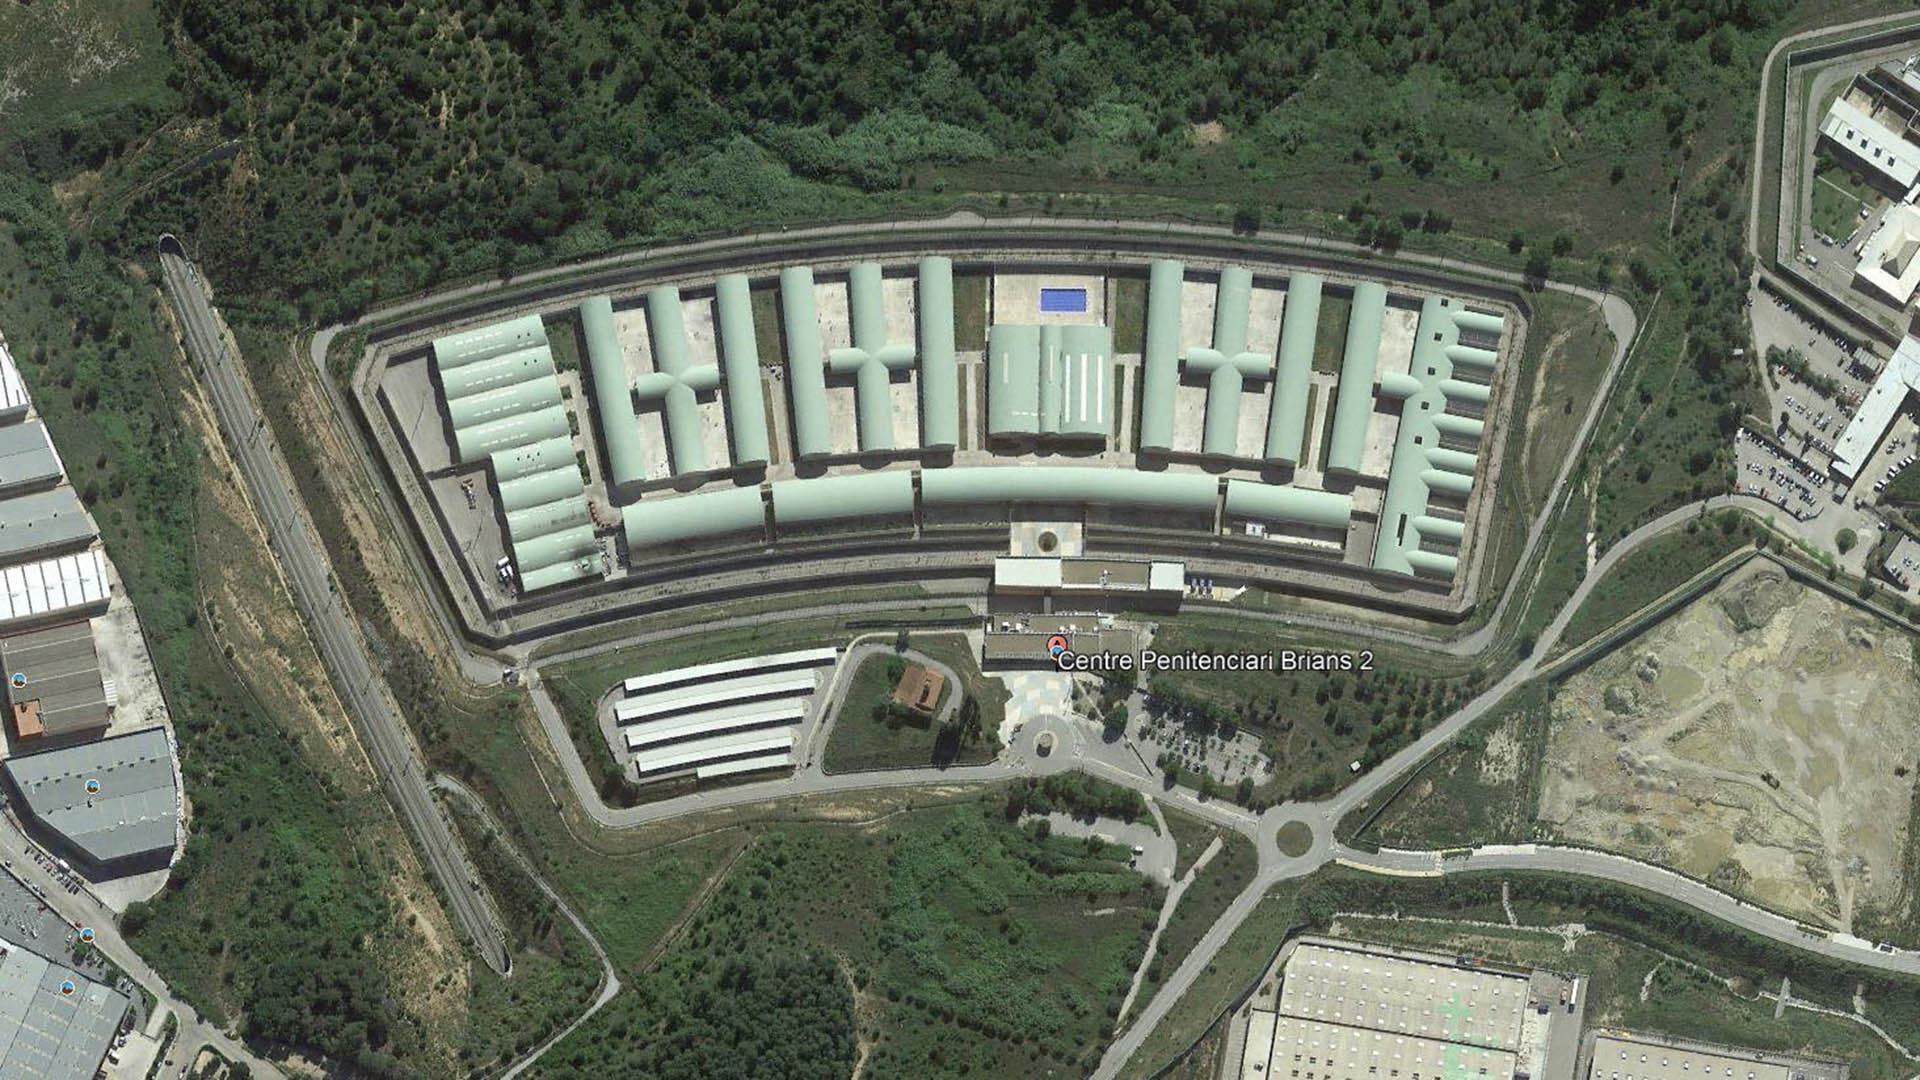 Vista aérea de la cárcel donde se encuentra el jugador brasileño